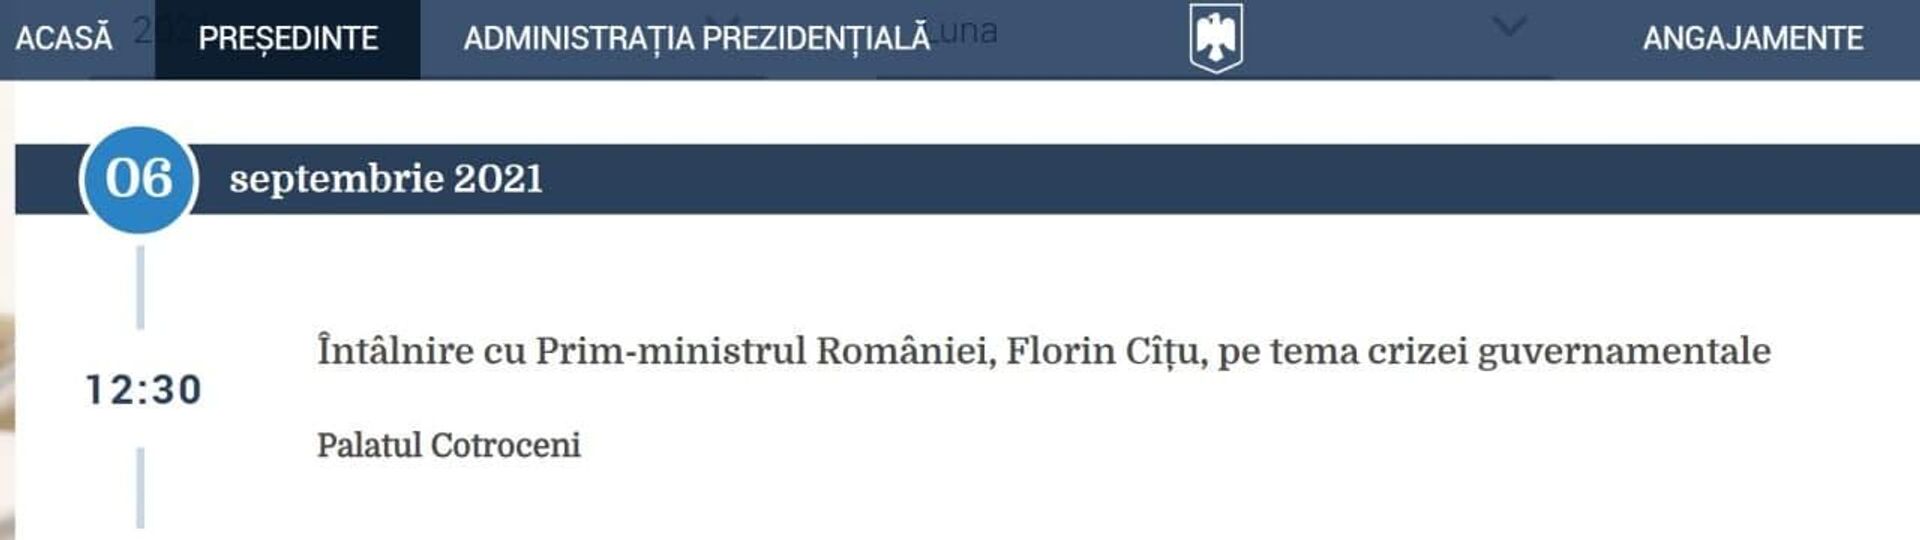 Agenda președintelui României - întâlnire cu Florin Cîțu - Sputnik Moldova-România, 1920, 06.09.2021